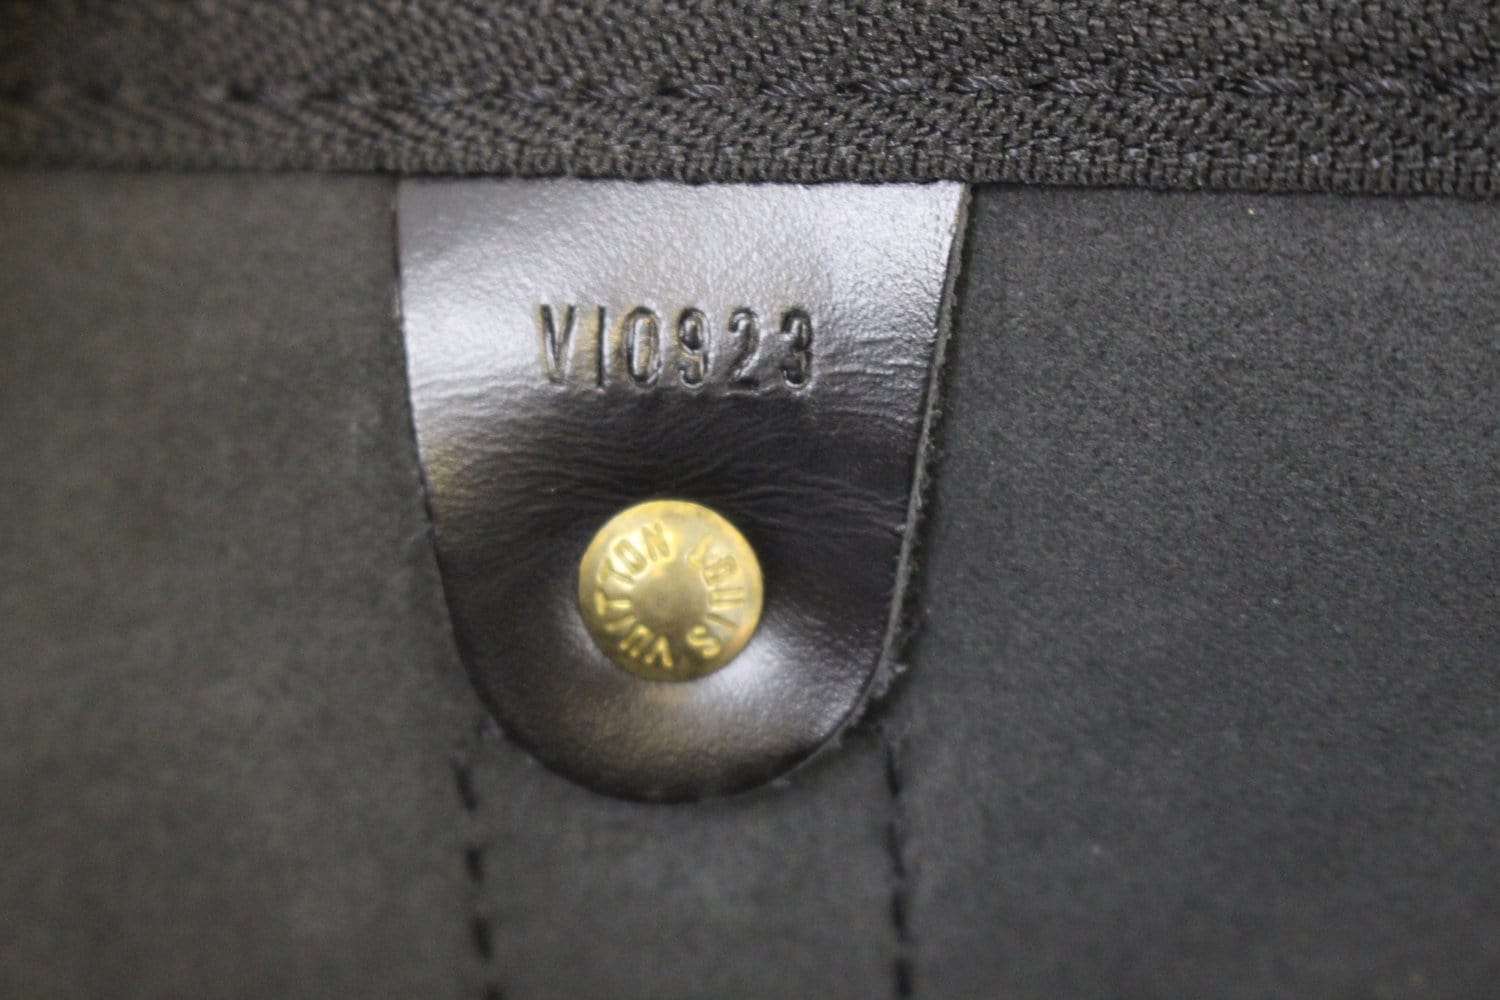 LOUIS VUITTON Boston bag M42941 Keepall 50 vintage Epi Leather